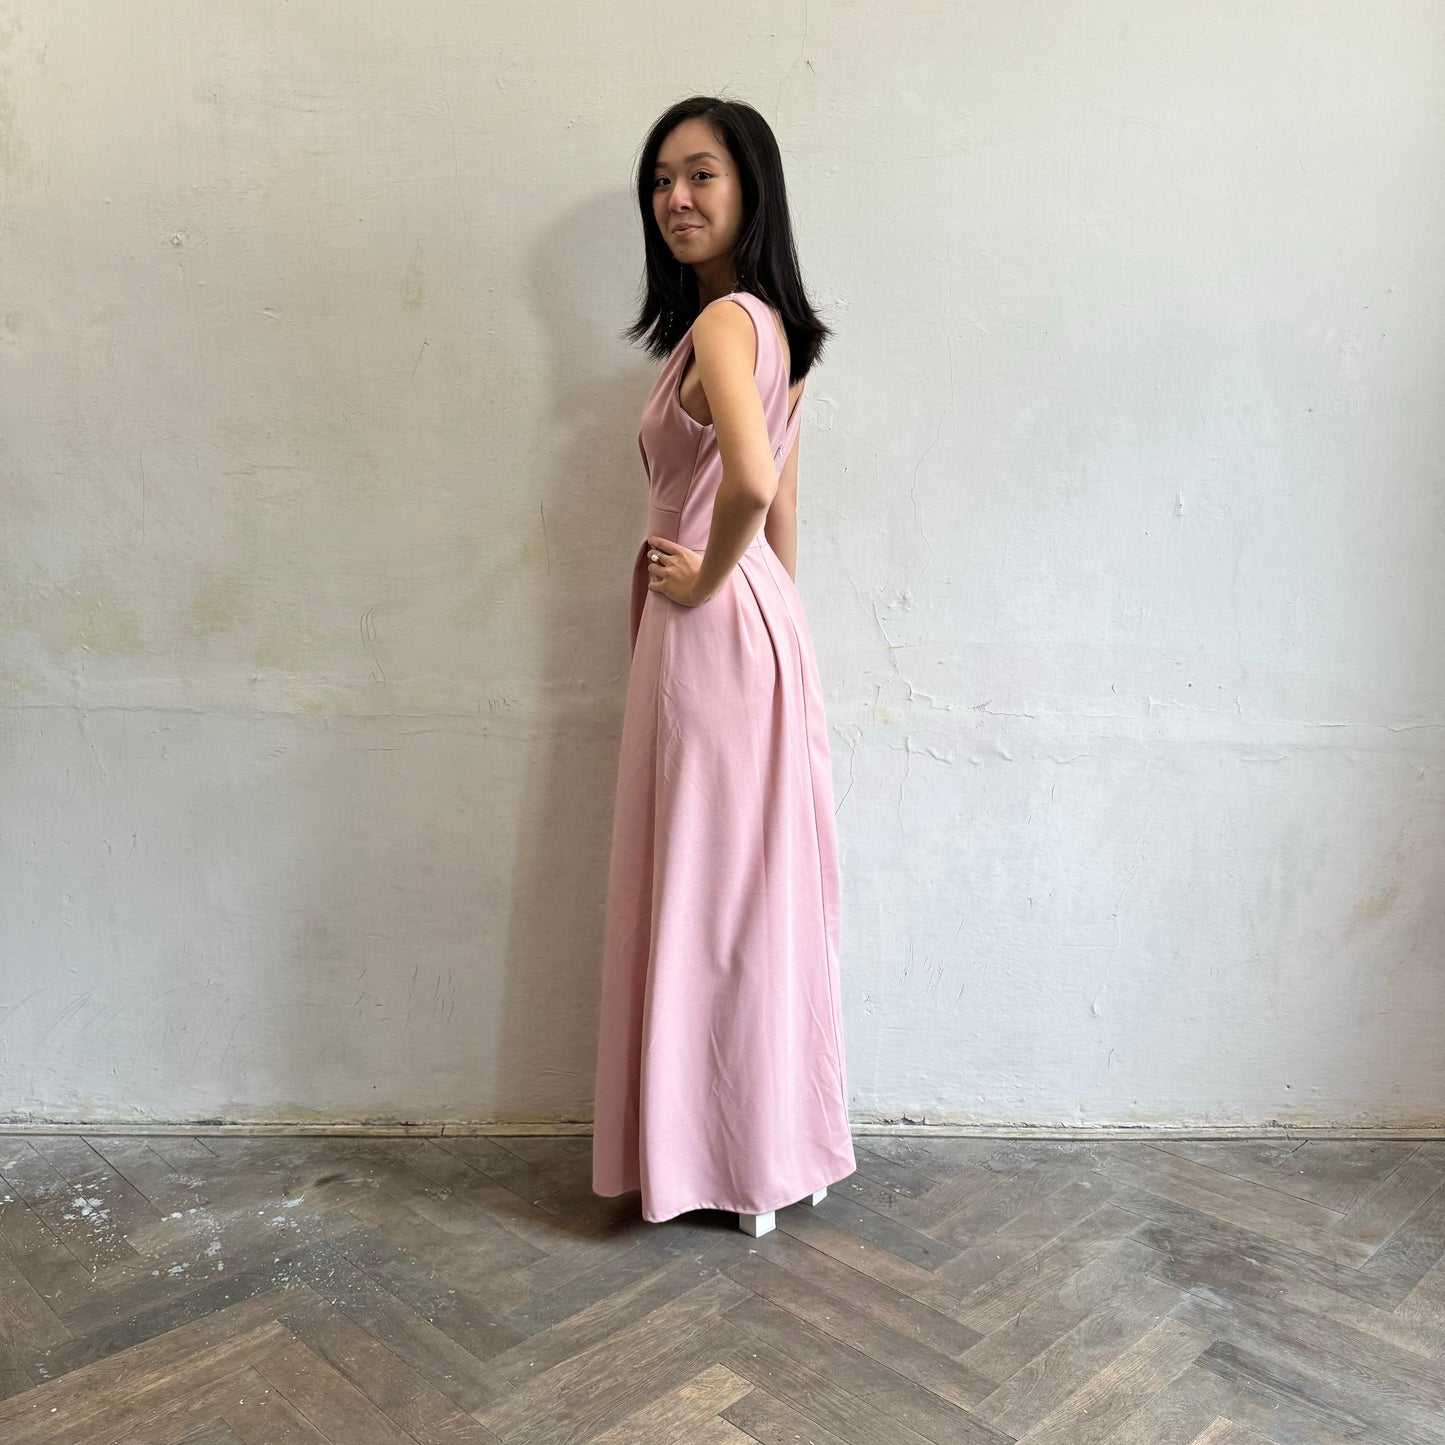 Modelka asijského původu pózující z boku oblečená ve světle růžových společenských šatech s rozparkem